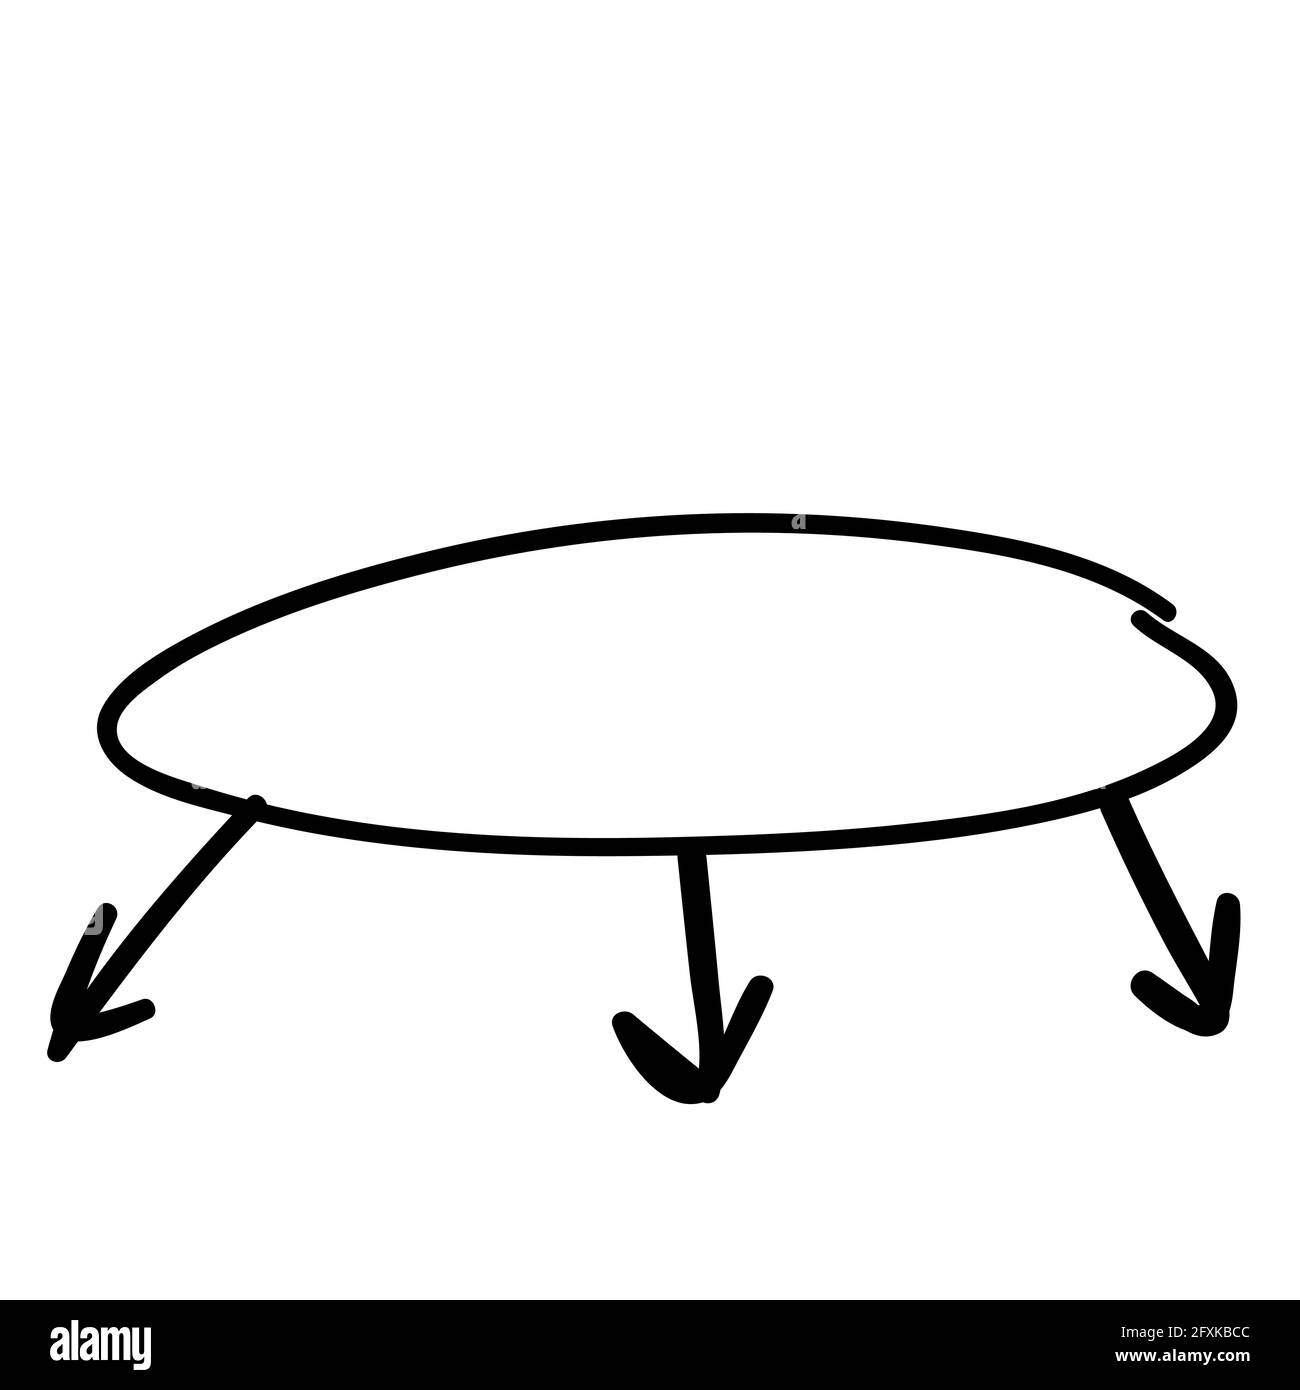 cadre ovale avec trois flèches vers le bas. dessin à la main doodle pour infographies, fond noir, linéaire, blanc. Noir, linéaire, cadres et flèches pour infogra Illustration de Vecteur